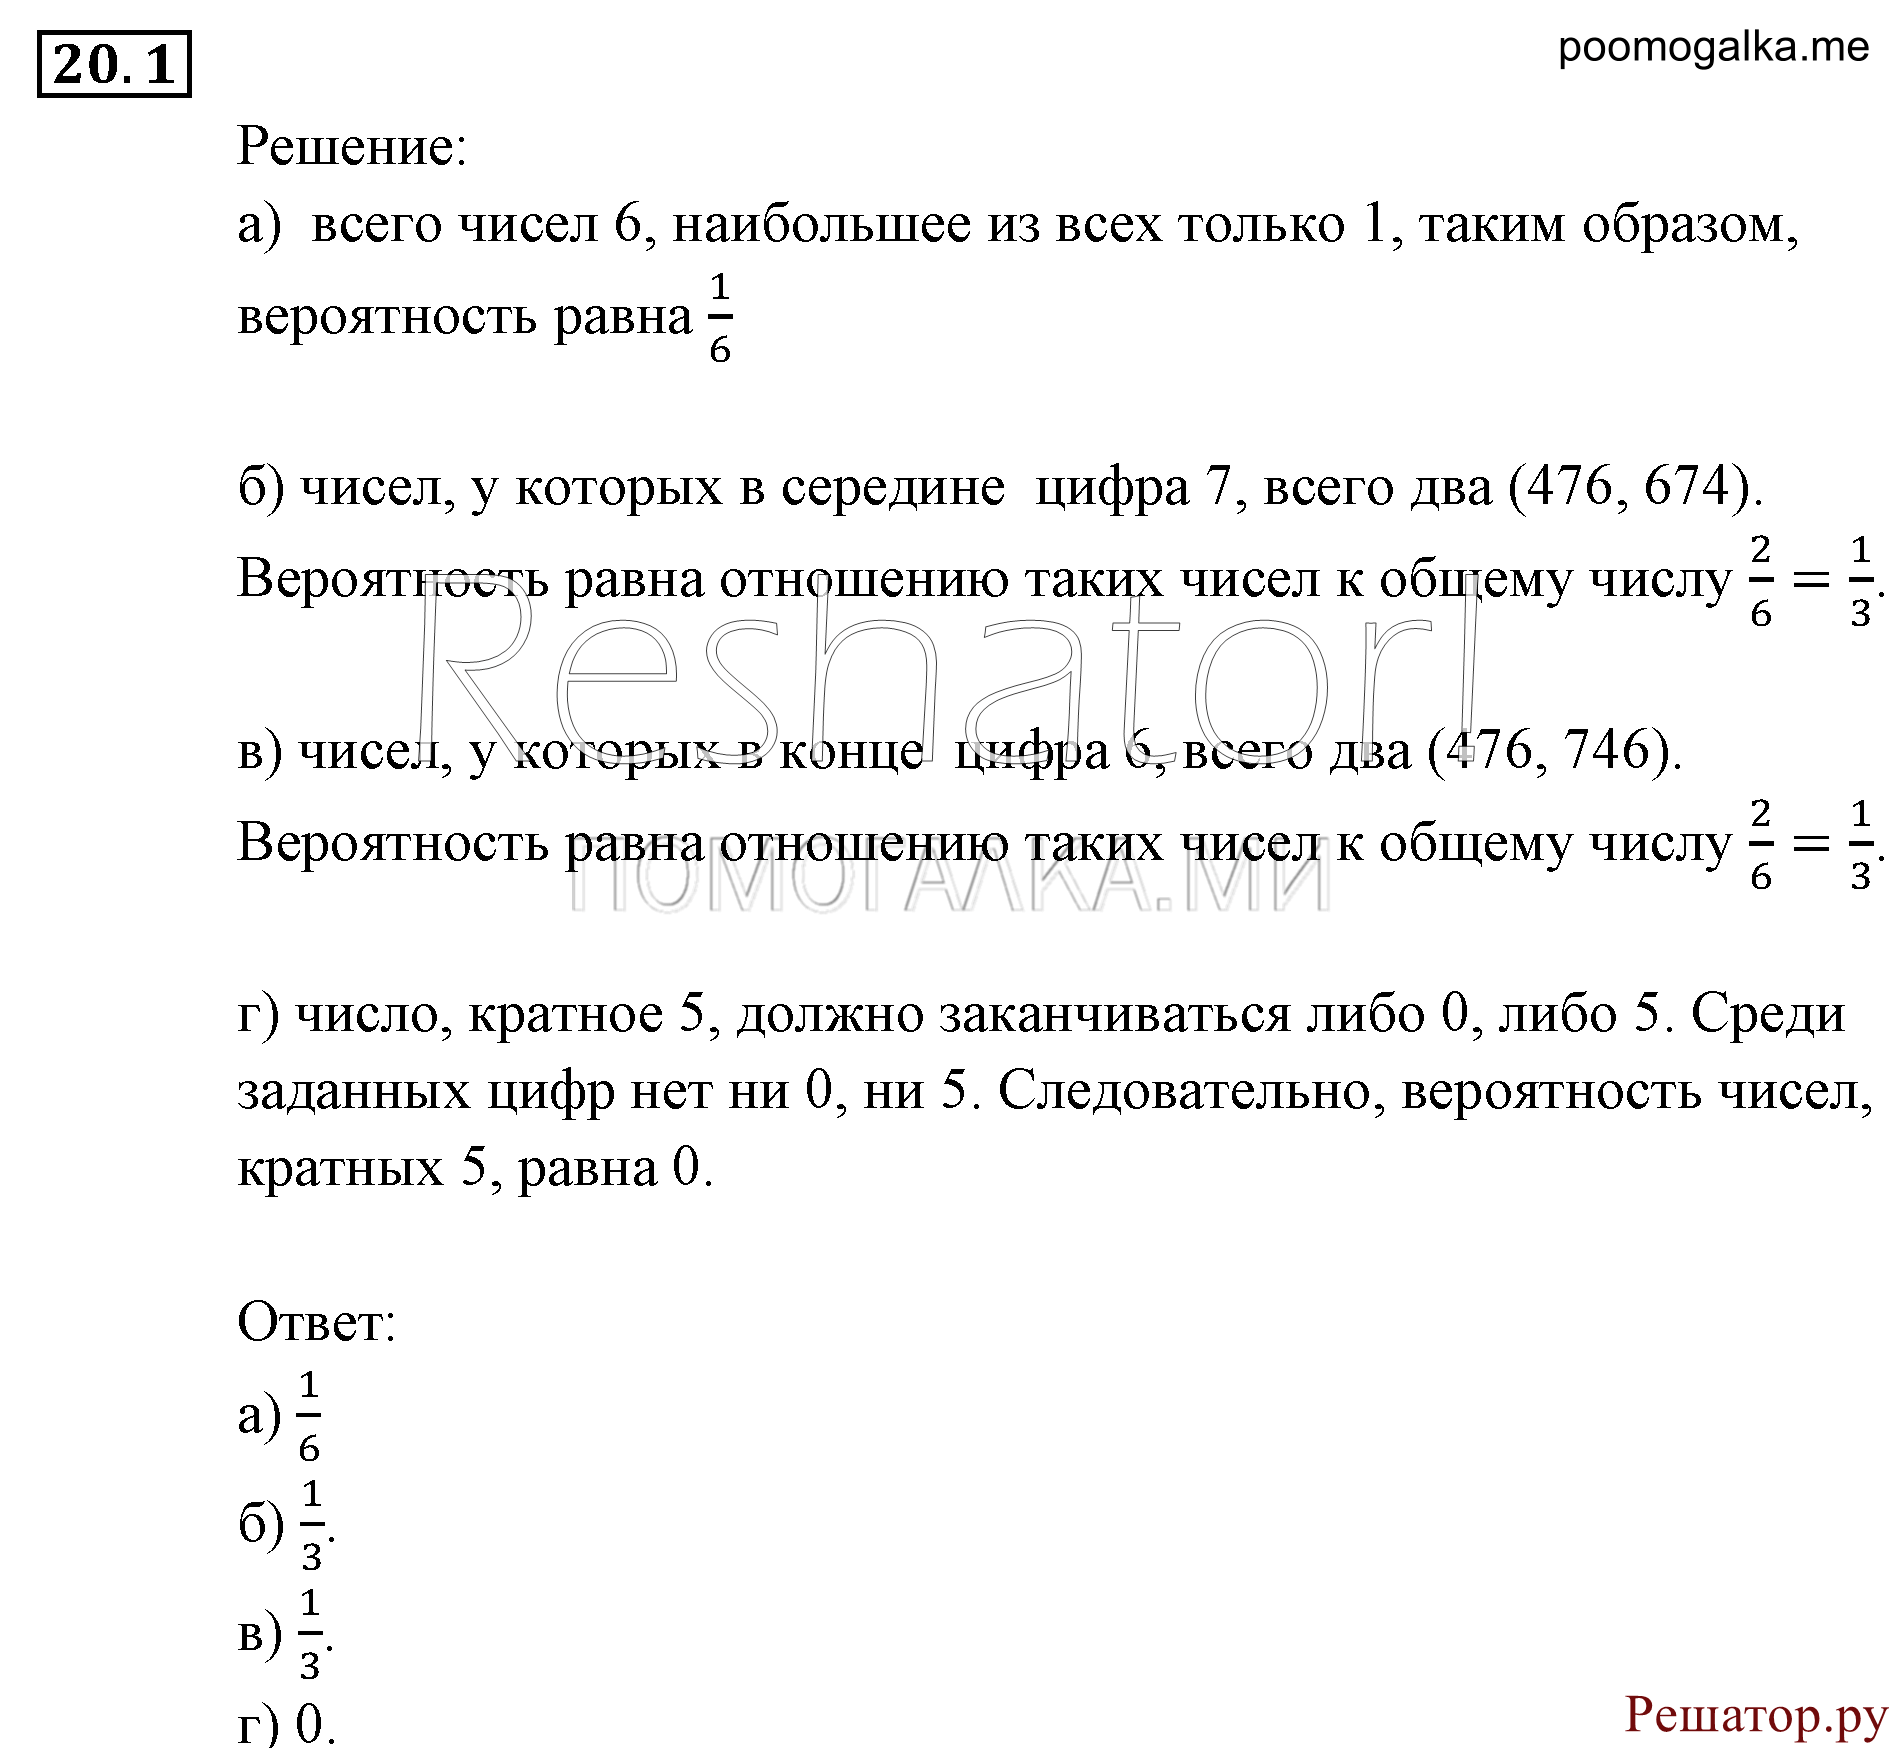 задача №20.1 алгебра 9 класс Мордкович